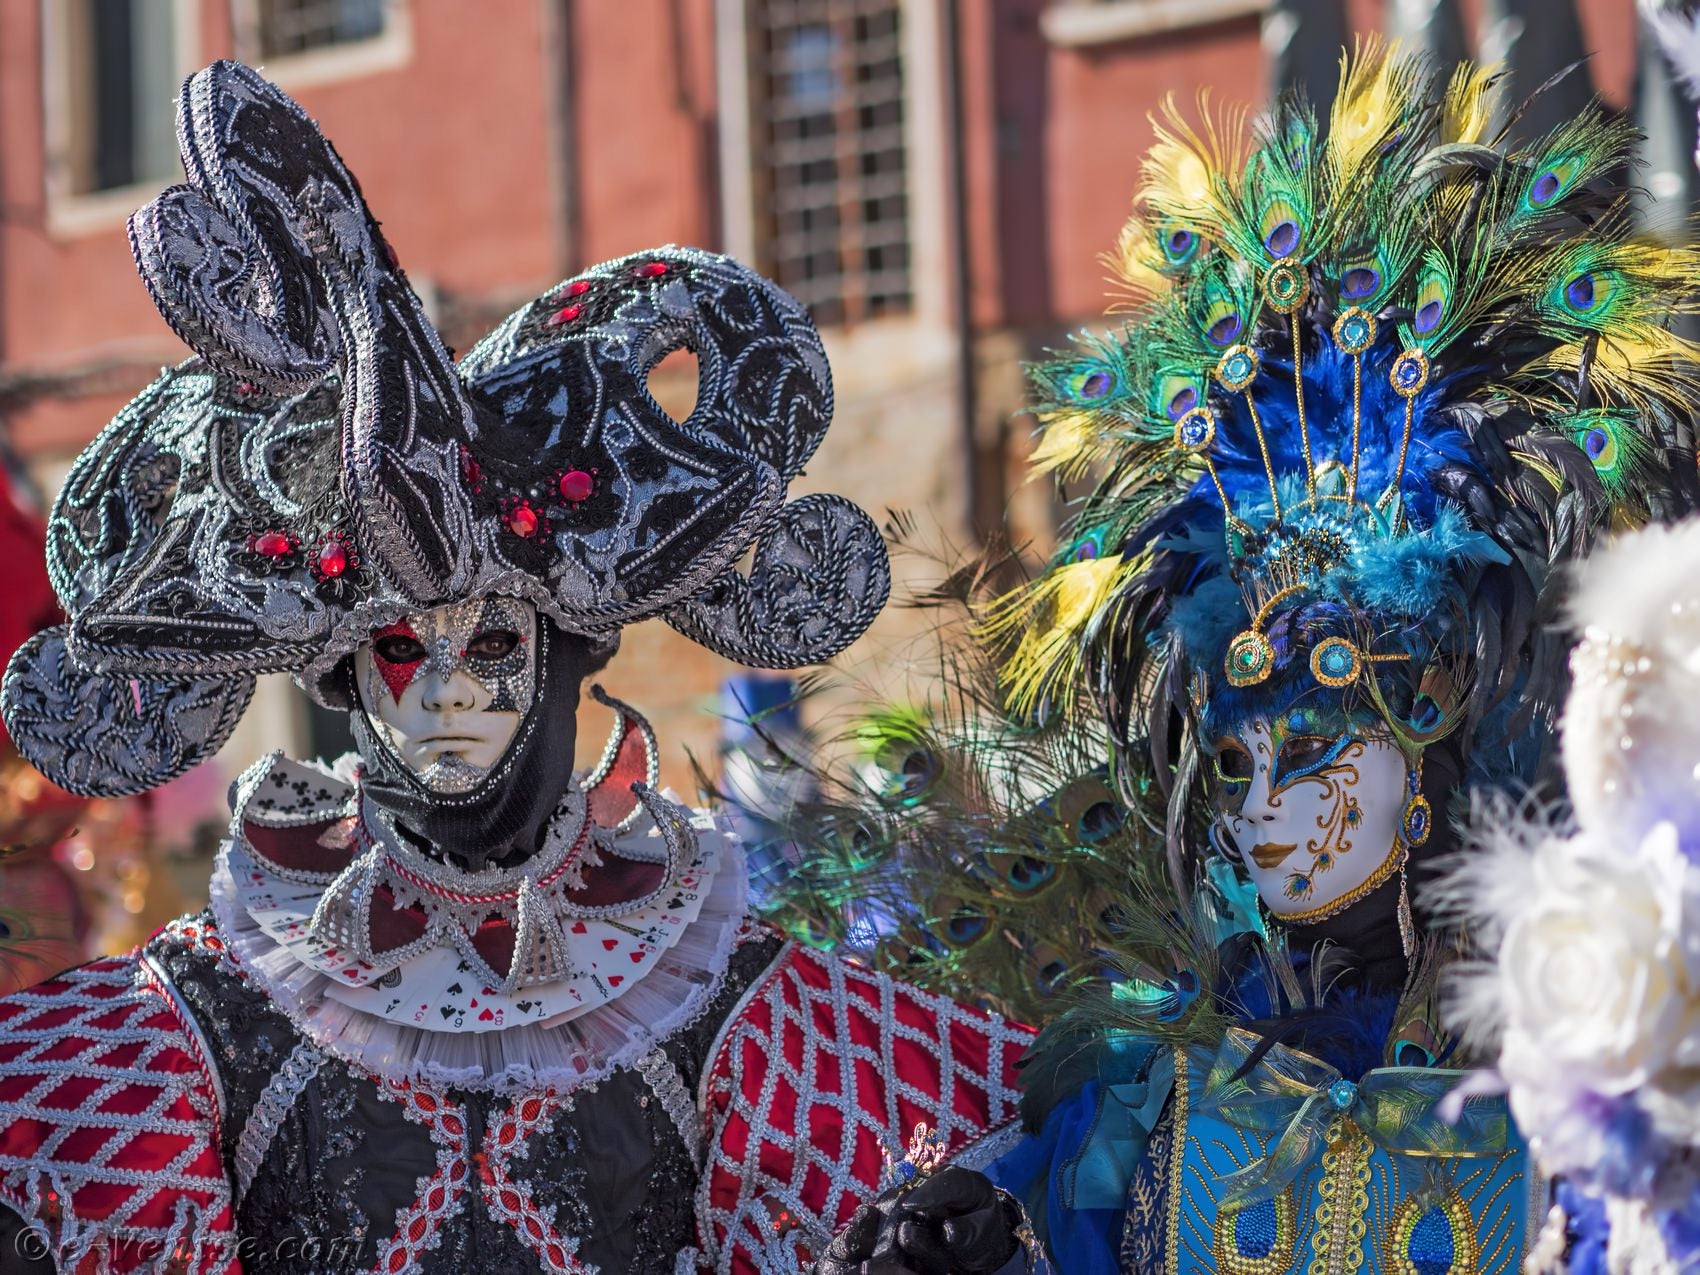 Un Homme En Costume Et Masque De Carnaval